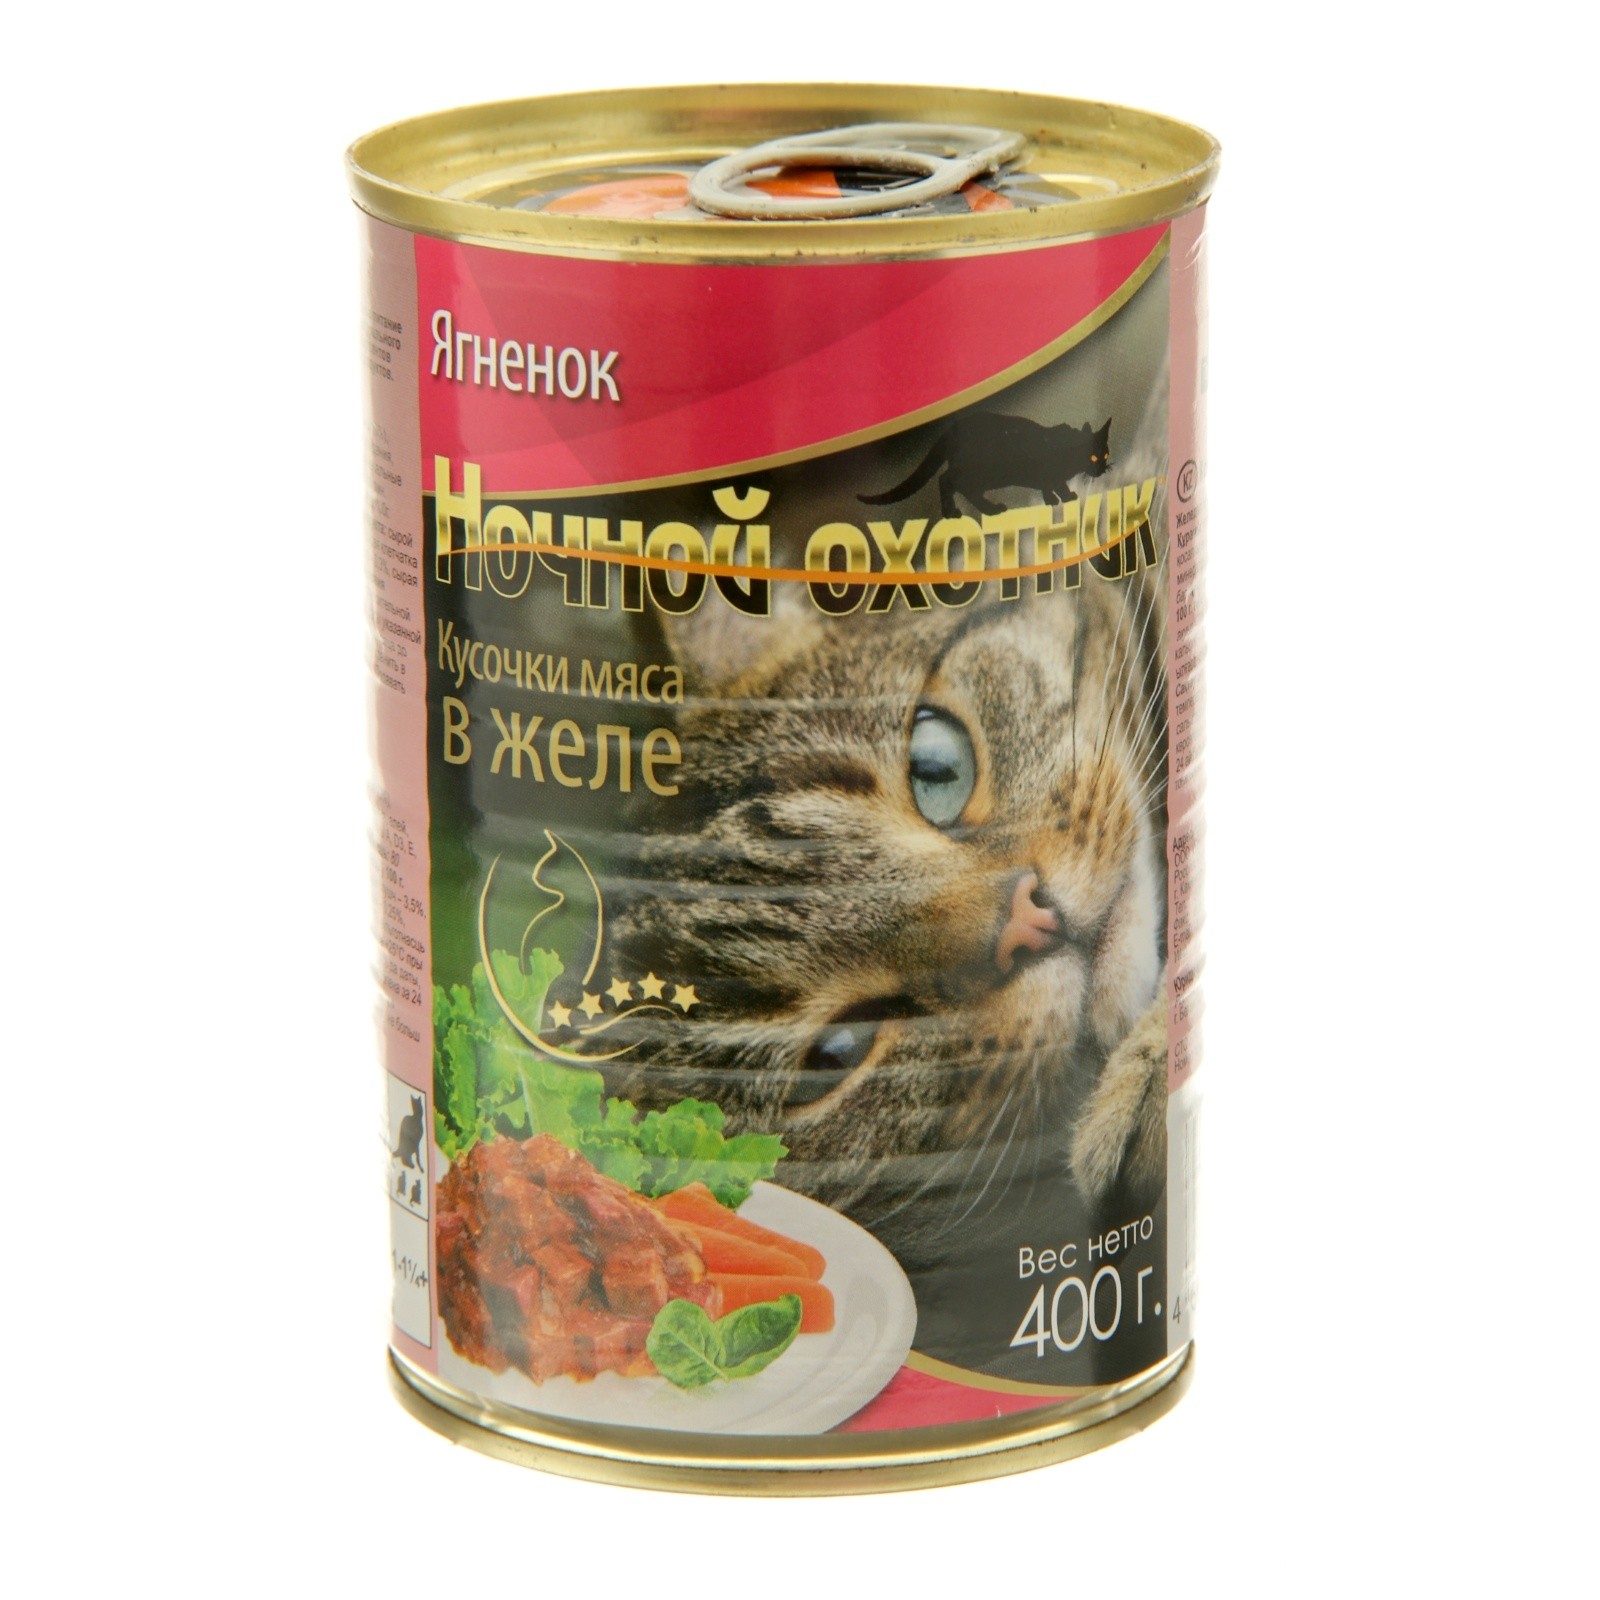 Влажный корм для кошек Ночной Охотник, в желе ягненок, 20шт, 415г